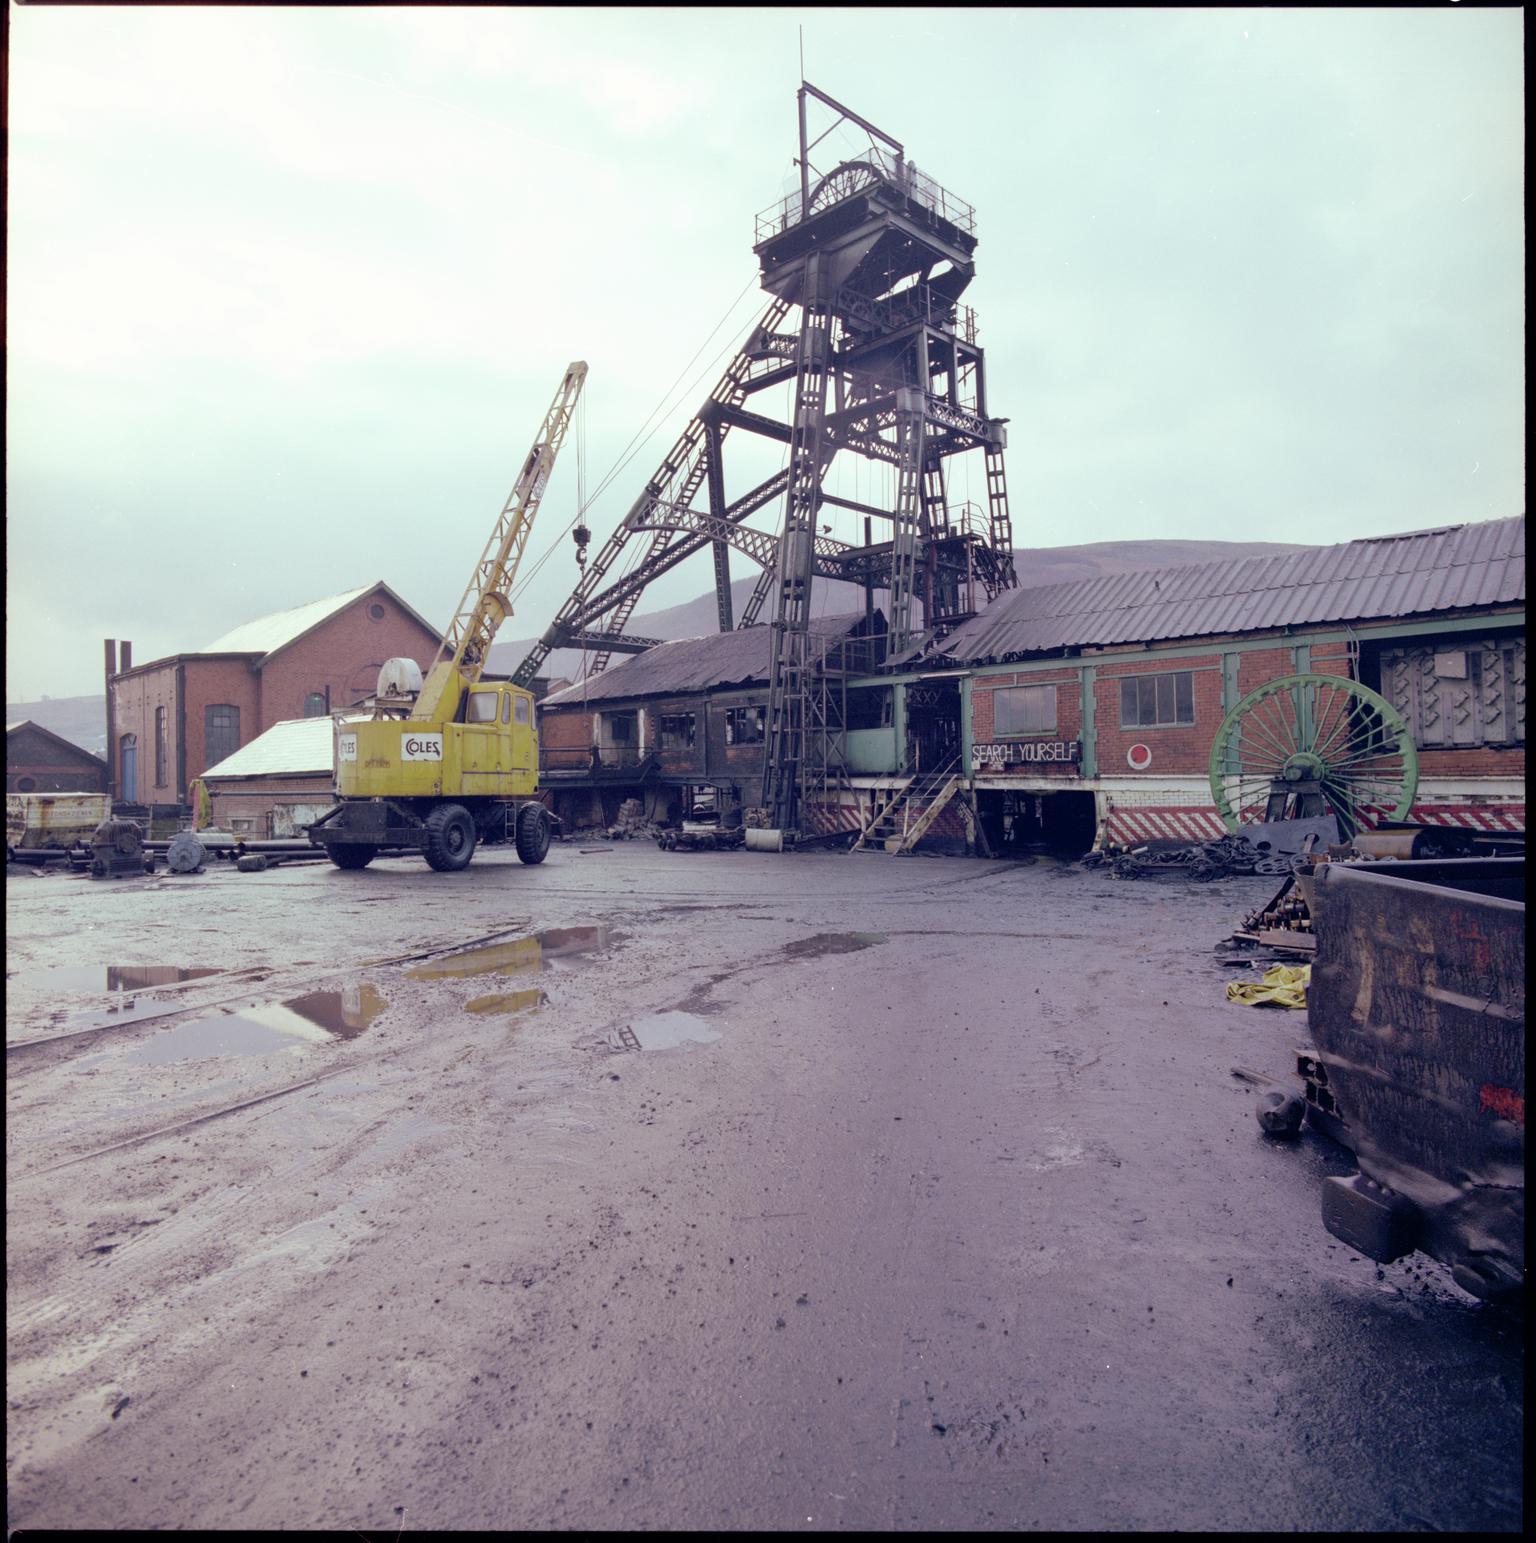 Deep Duffryn Colliery, negative